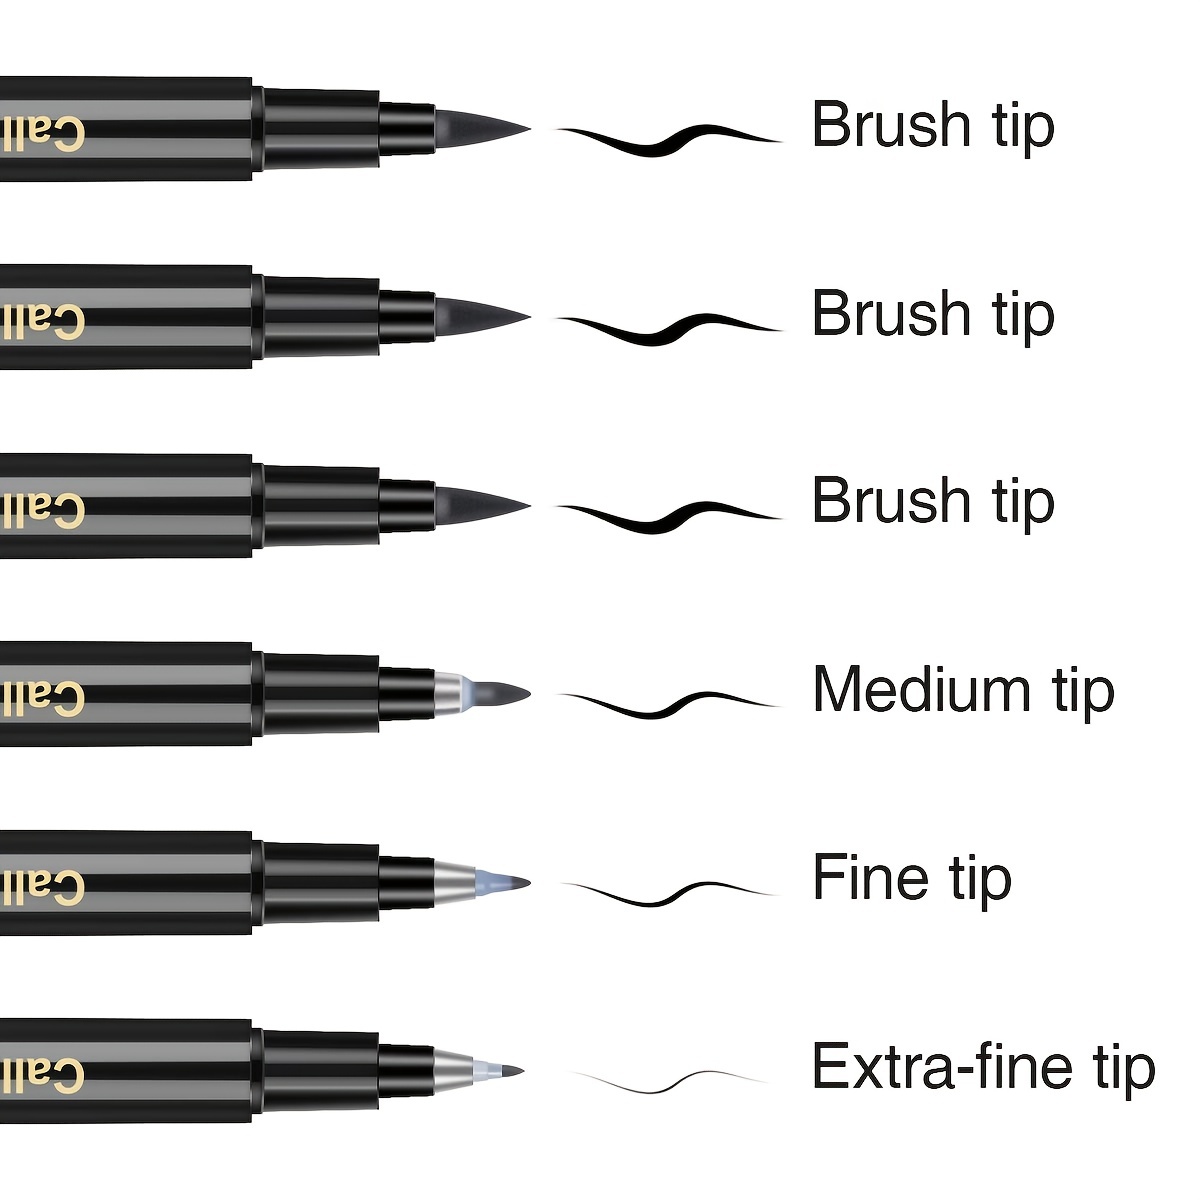 Elegant Writer Calligraphy Pens, Marker Sets, 4-Marker Set